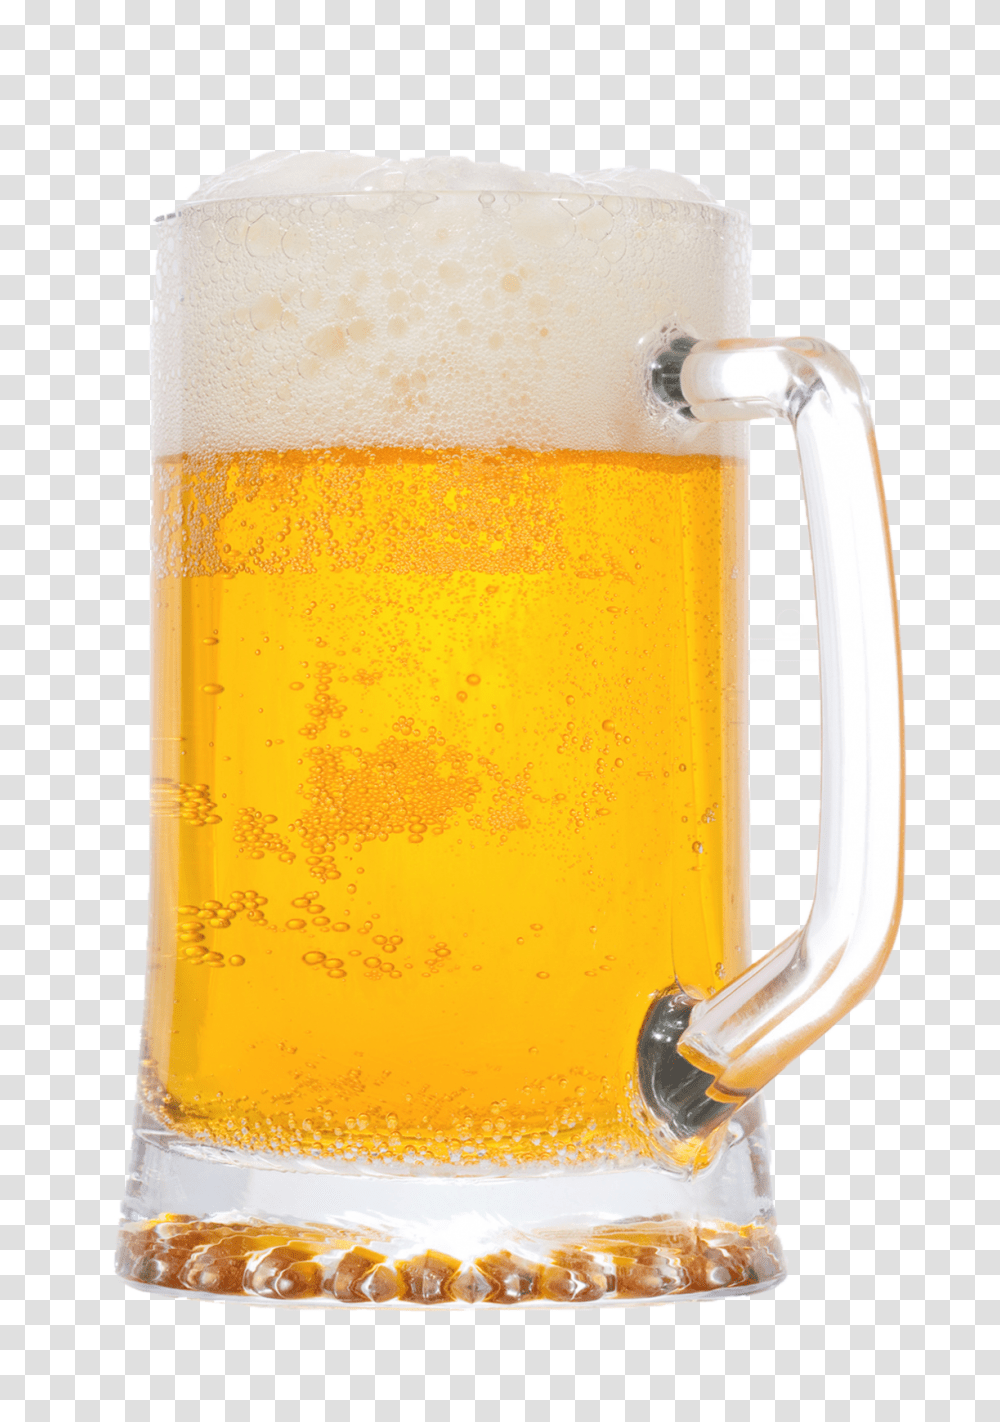 Download Hd Beer Mug Light Mug Of Beer, Glass, Beer Glass, Alcohol, Beverage Transparent Png